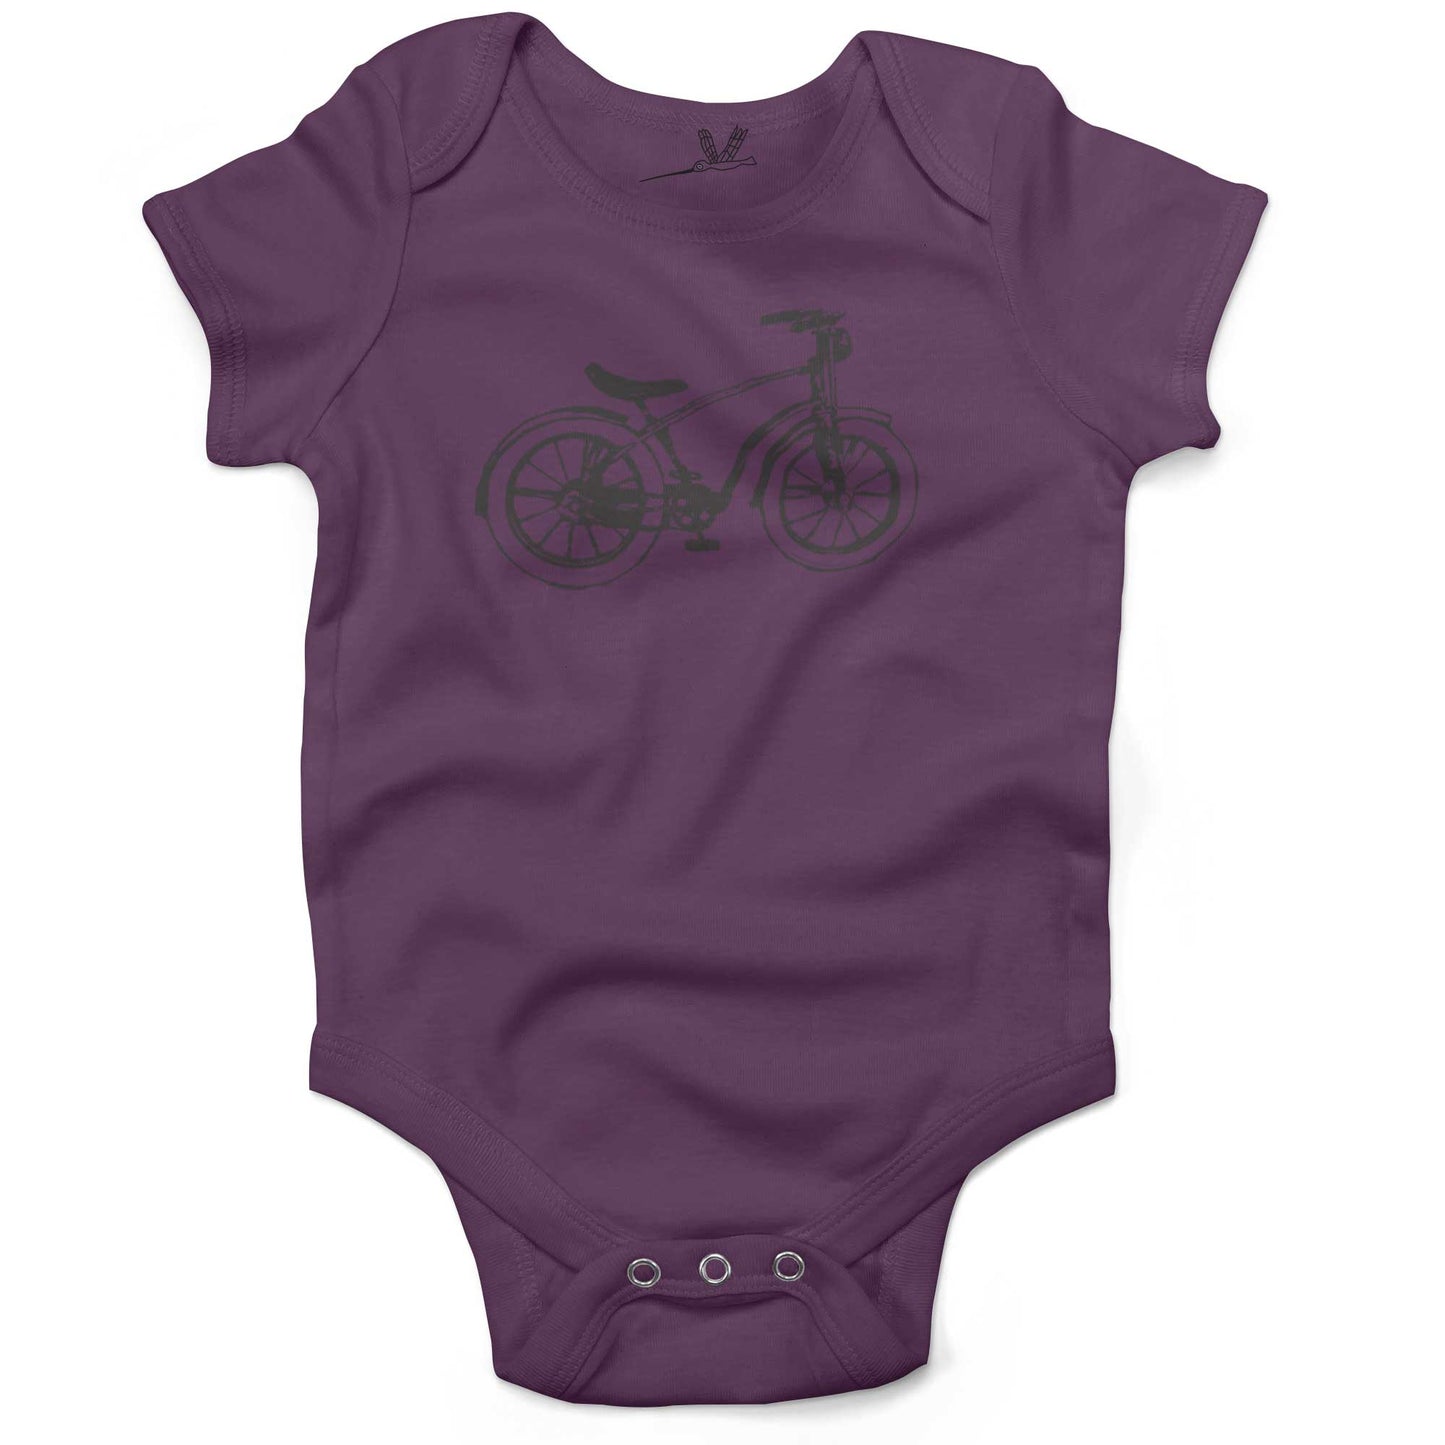 Vintage Bike Infant Bodysuit or Raglan Baby Tee-Organic Purple-3-6 months